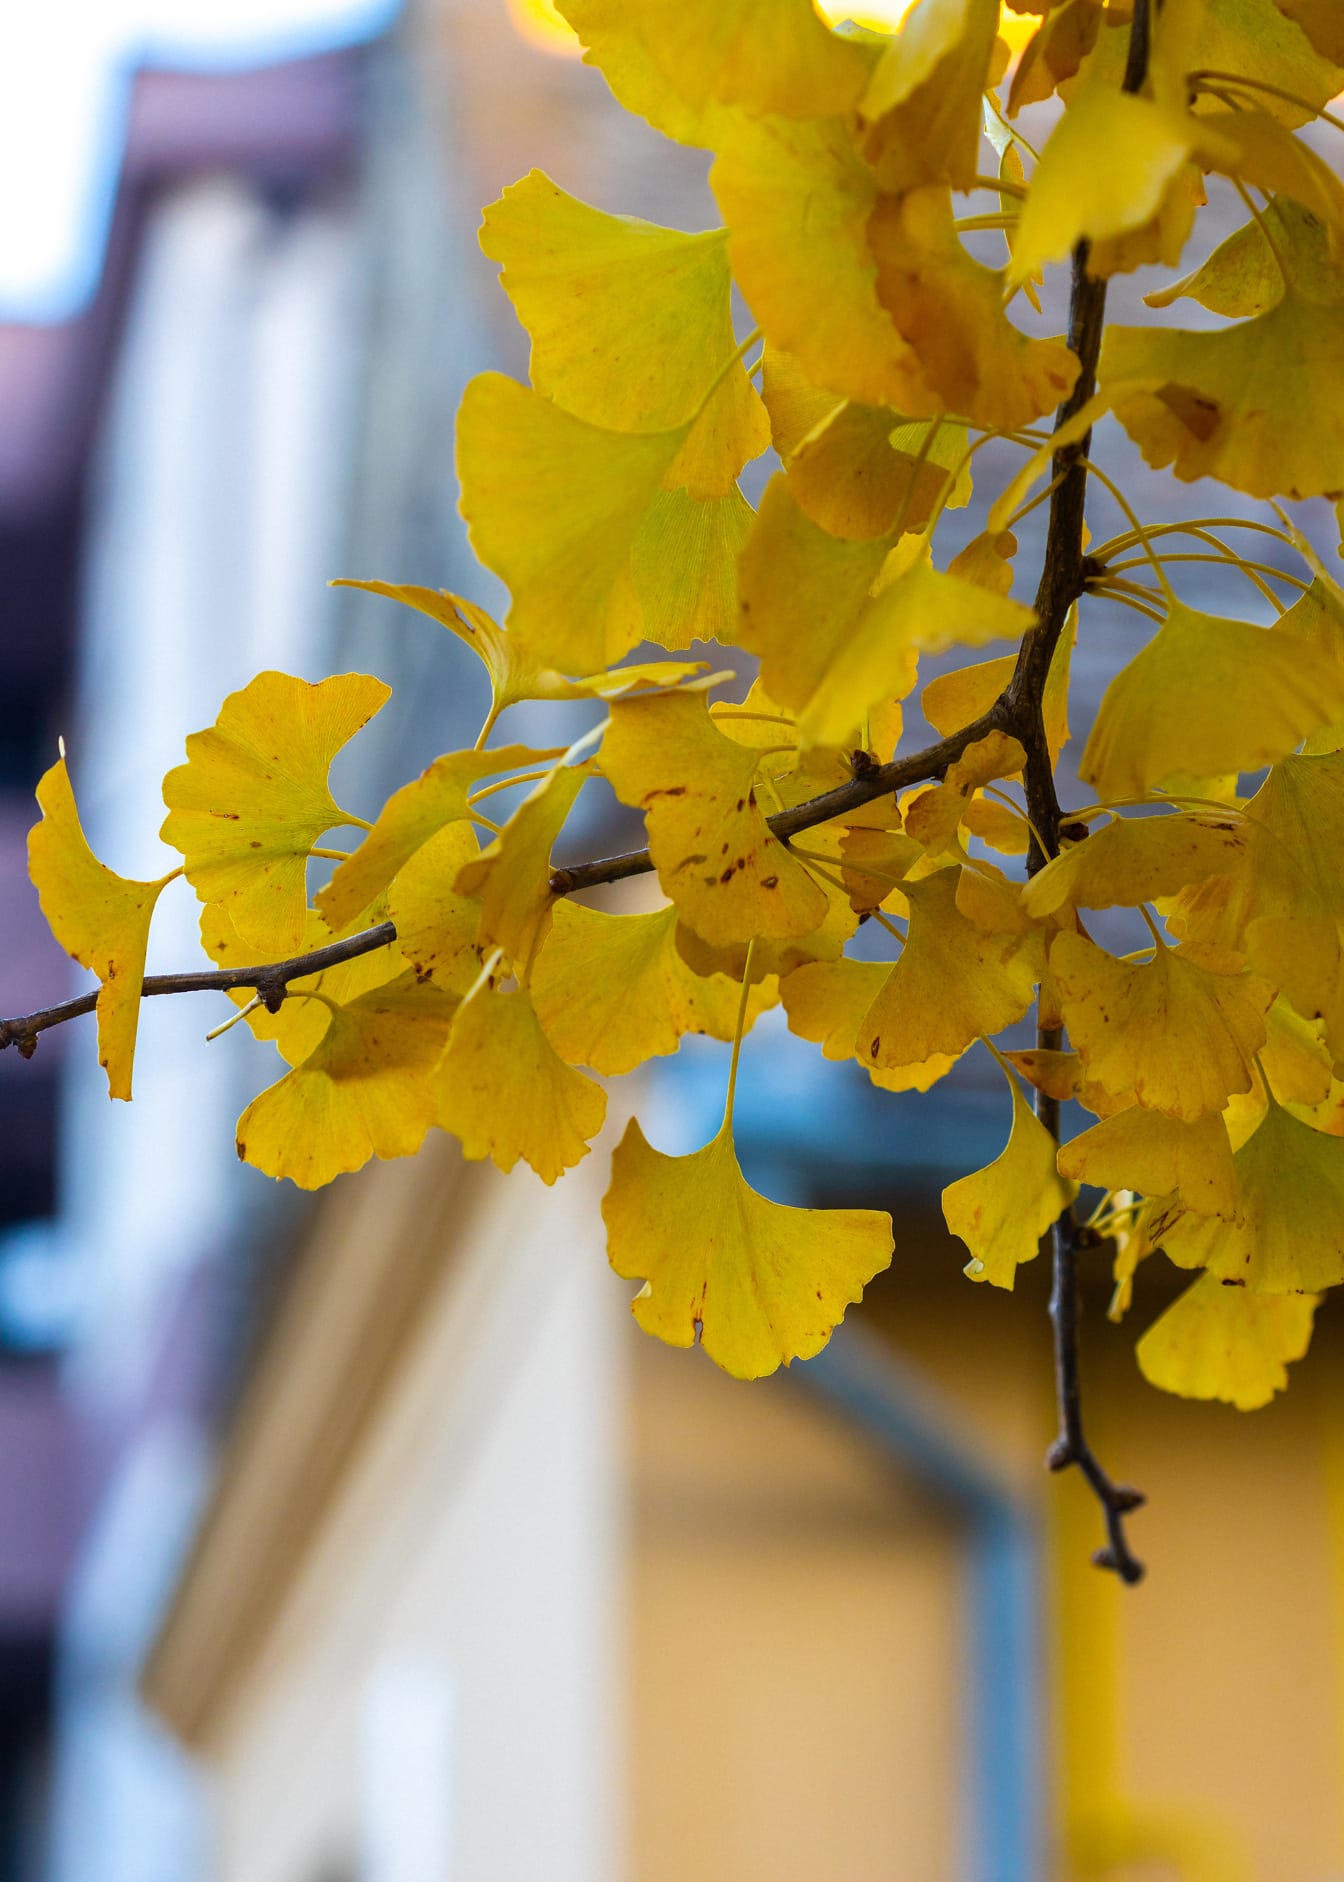 Függőleges fotó az ágról sárga levelekkel